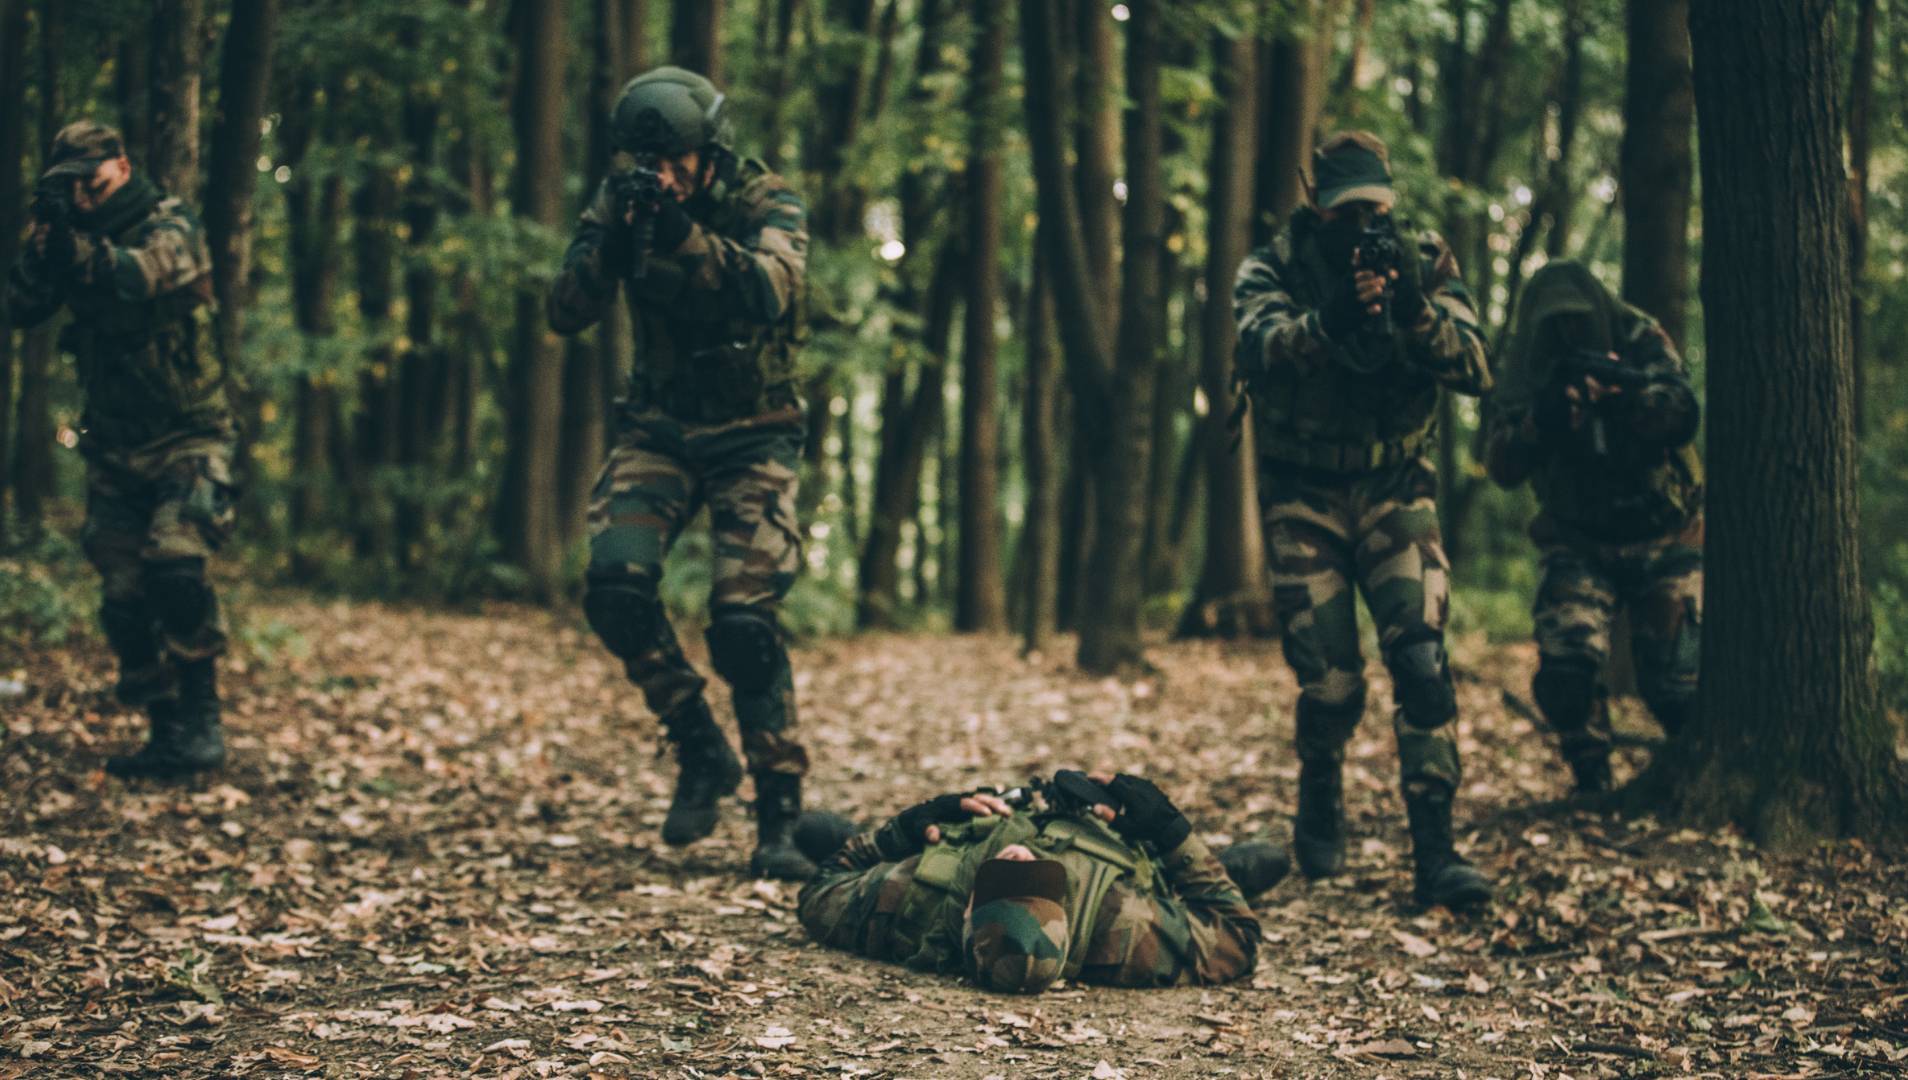 Soldiers fighting in forest combat scenario